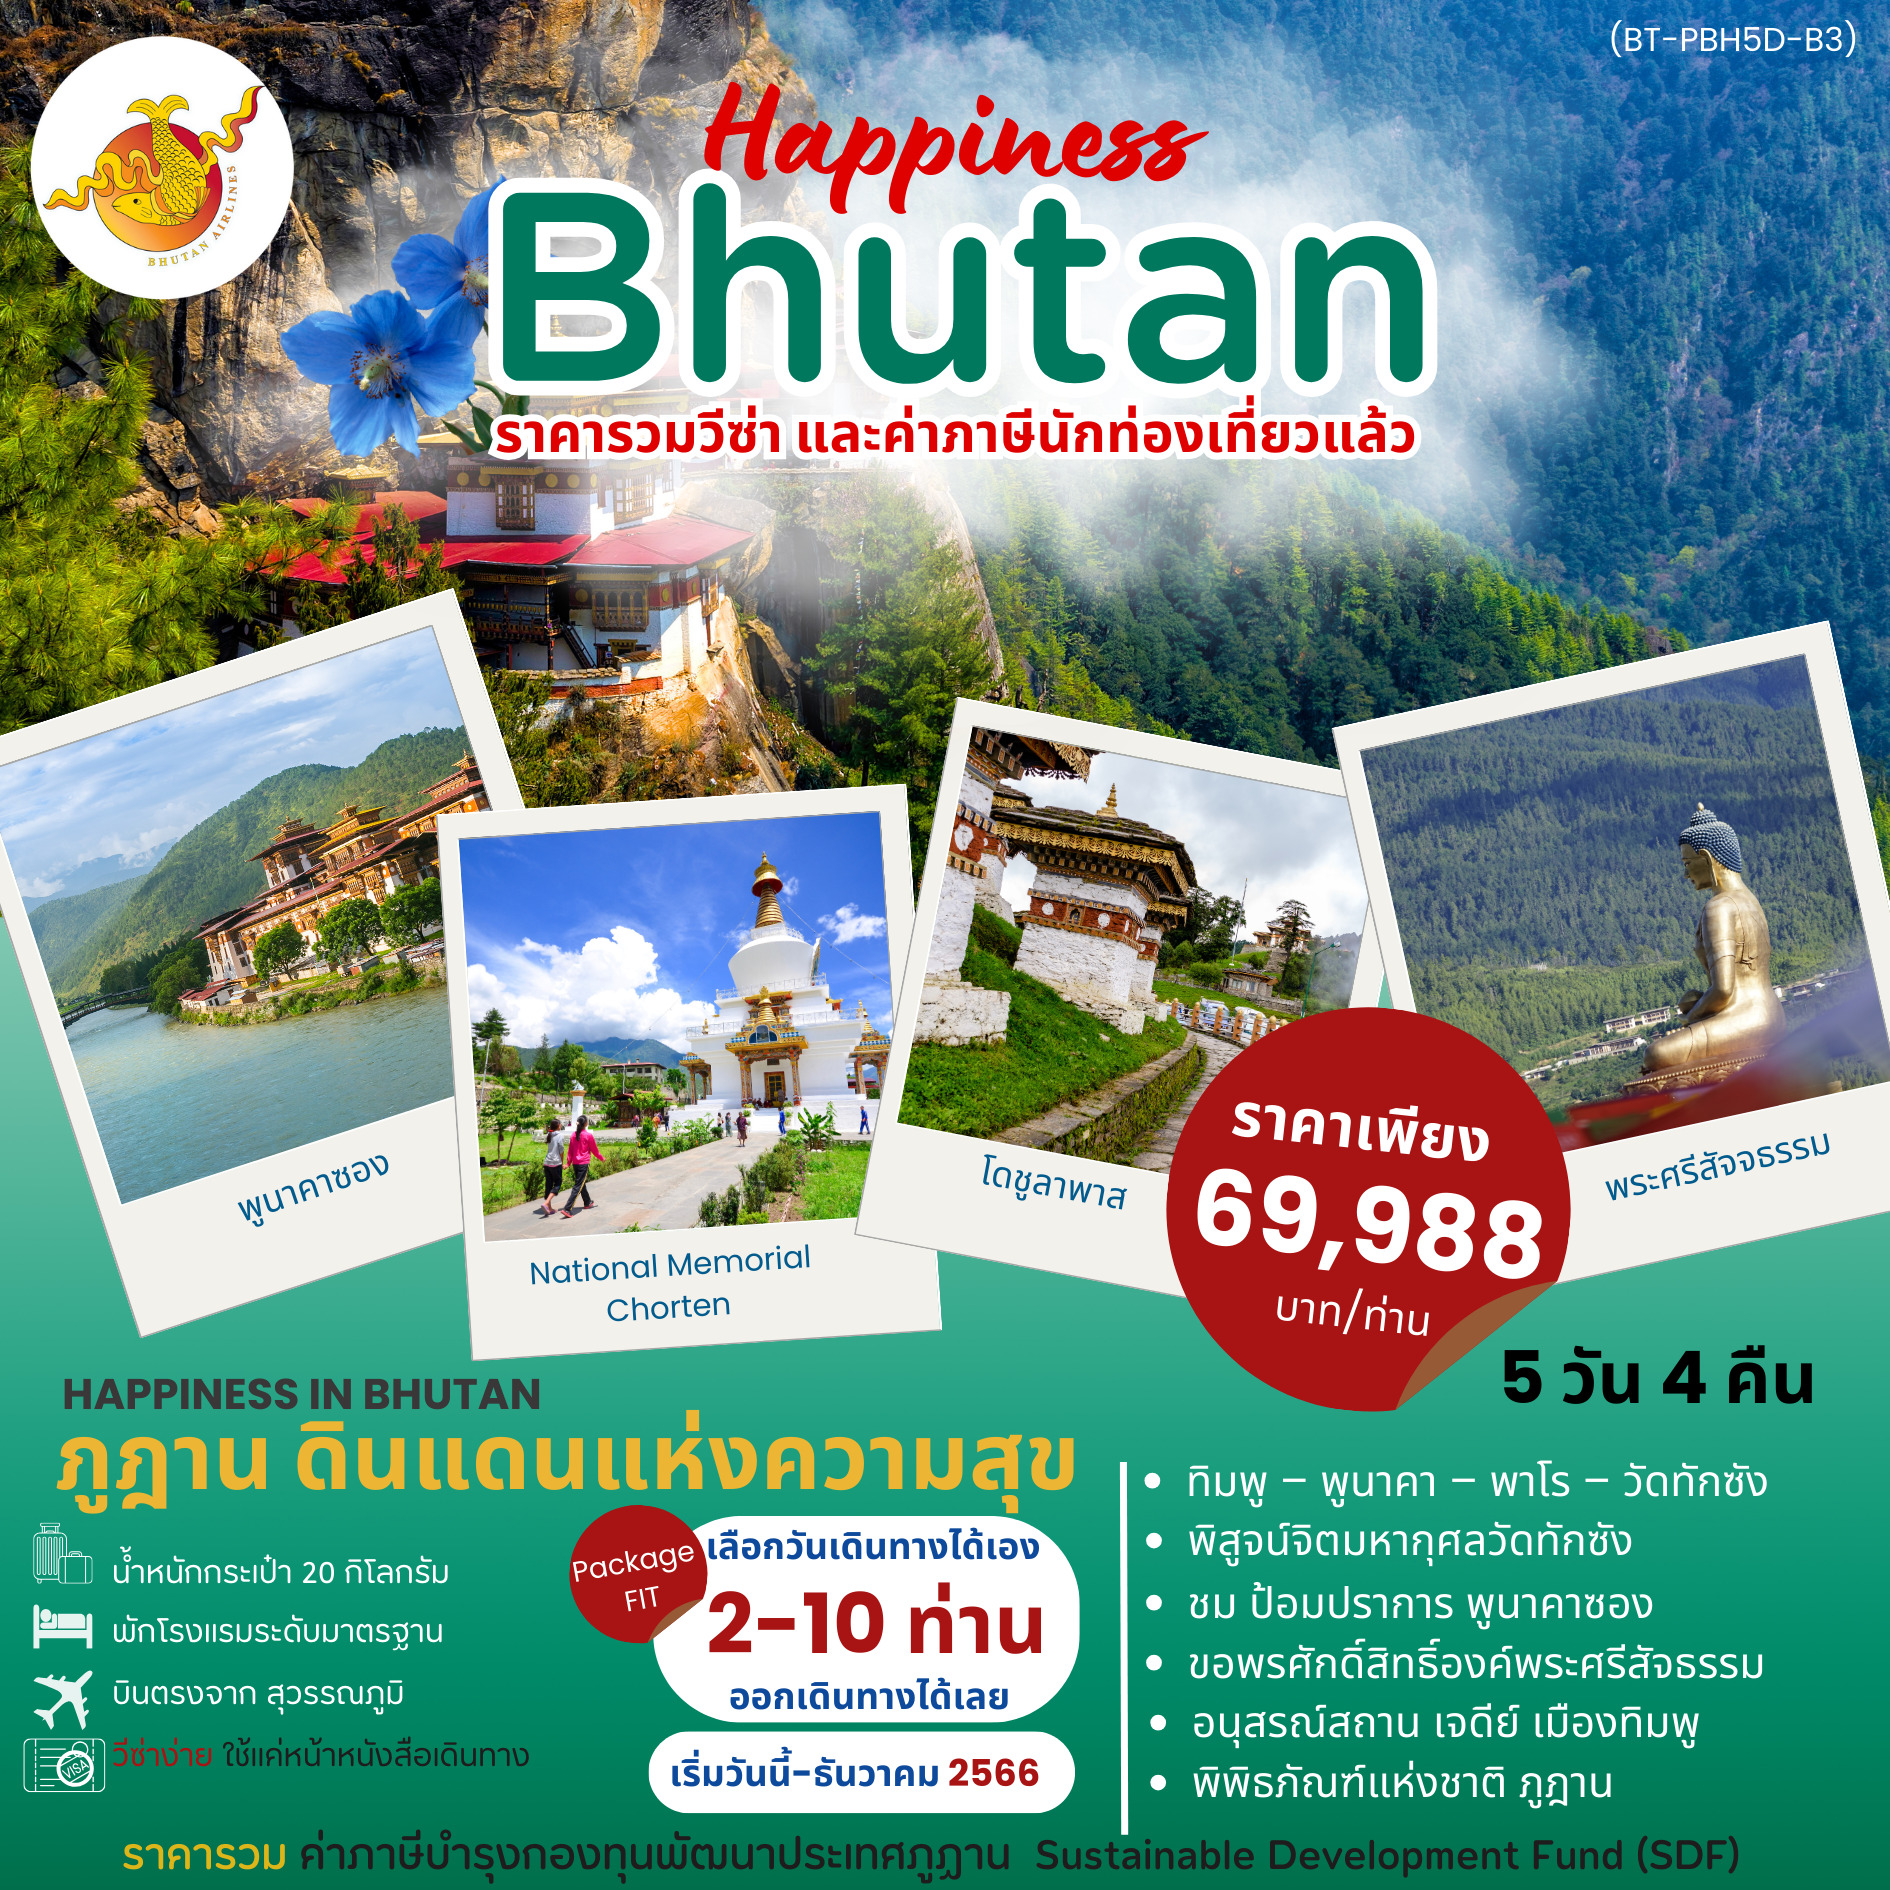 ทัวร์ภูฎาน HAPPINESS IN BHUTAN 5วัน 4คืน